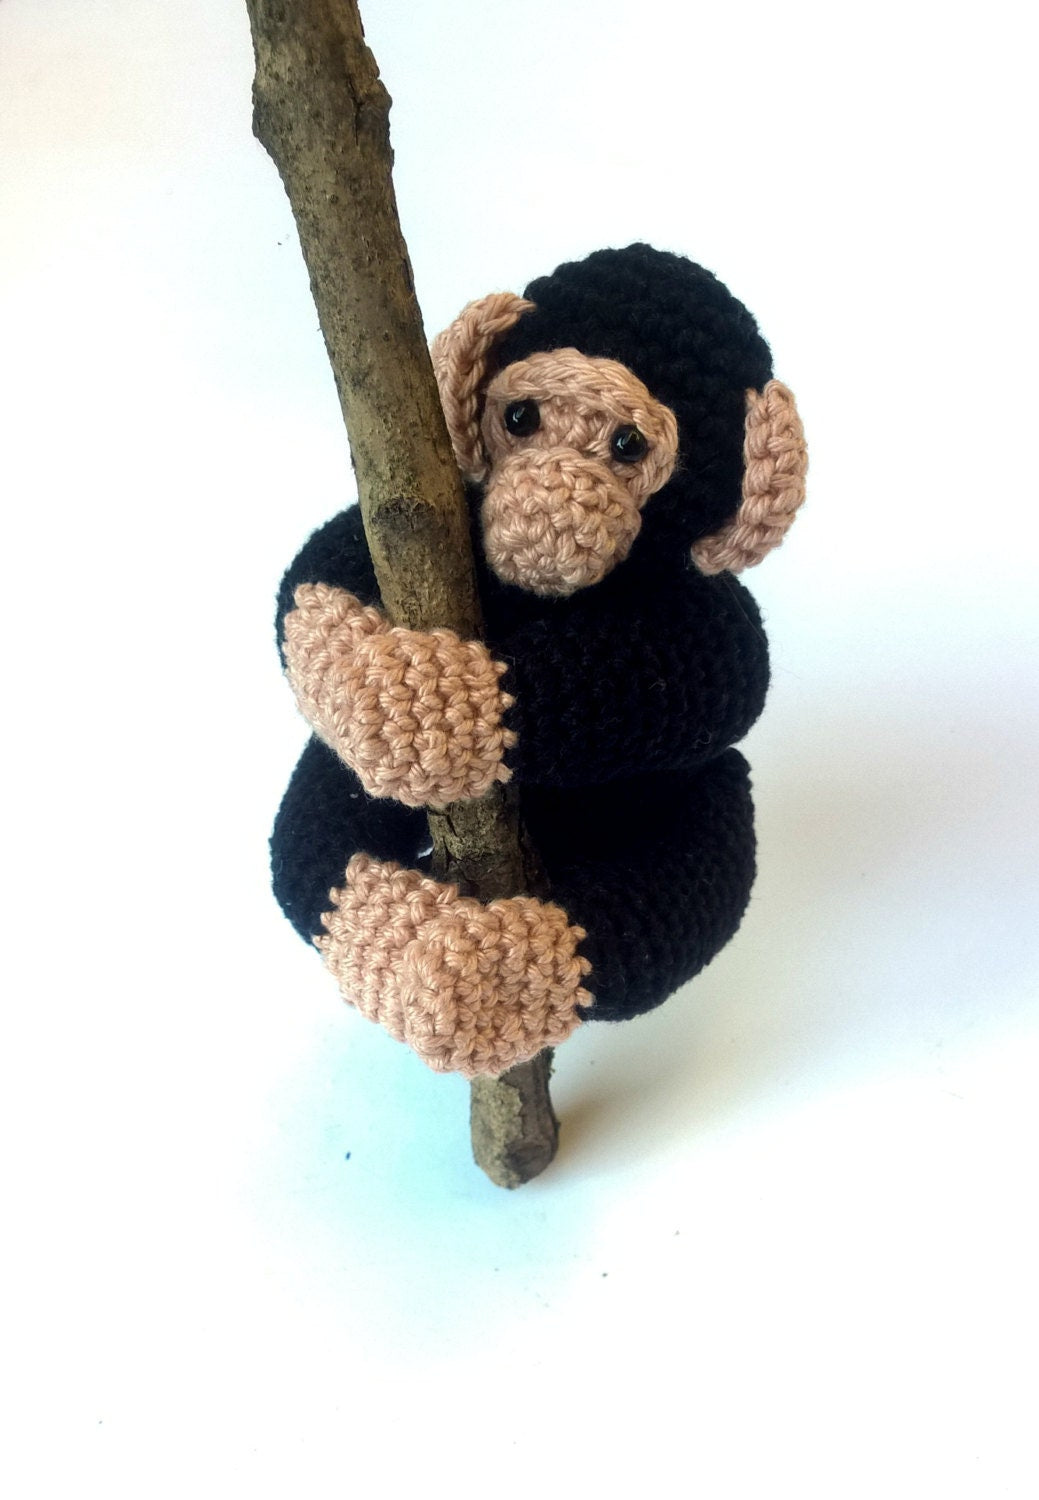 Chimpanzee monkey stuffed animal plush toy